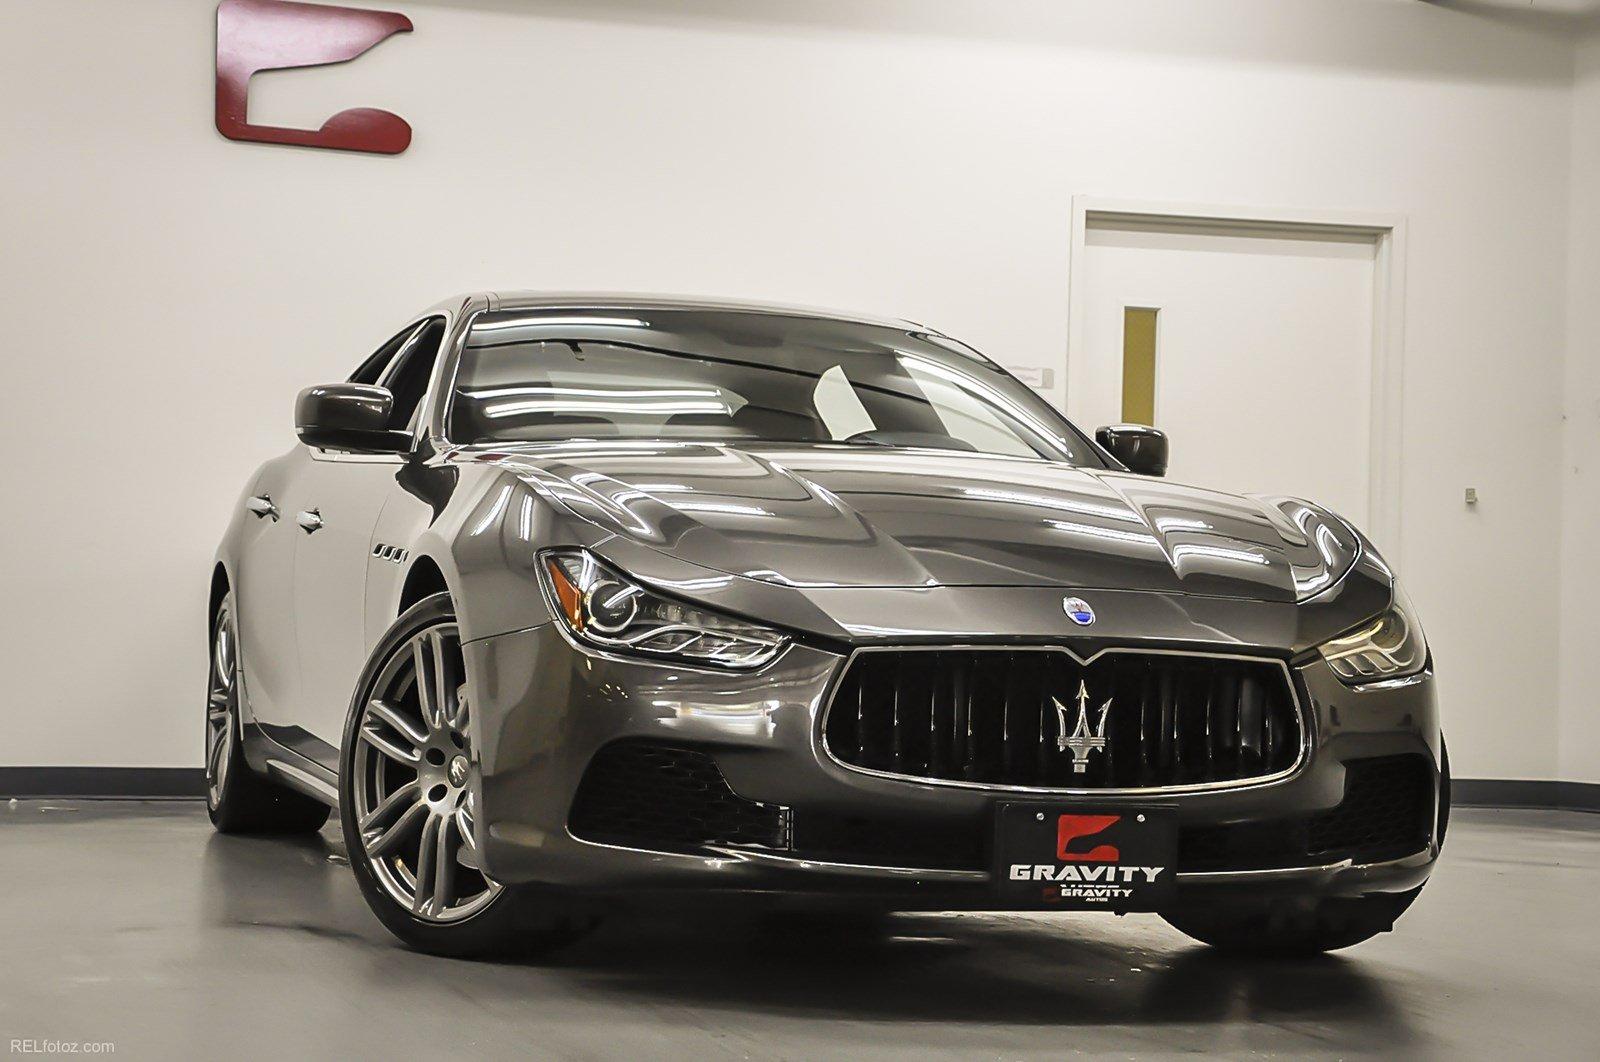 Used 2015 Maserati Ghibli for sale Sold at Gravity Autos Marietta in Marietta GA 30060 2